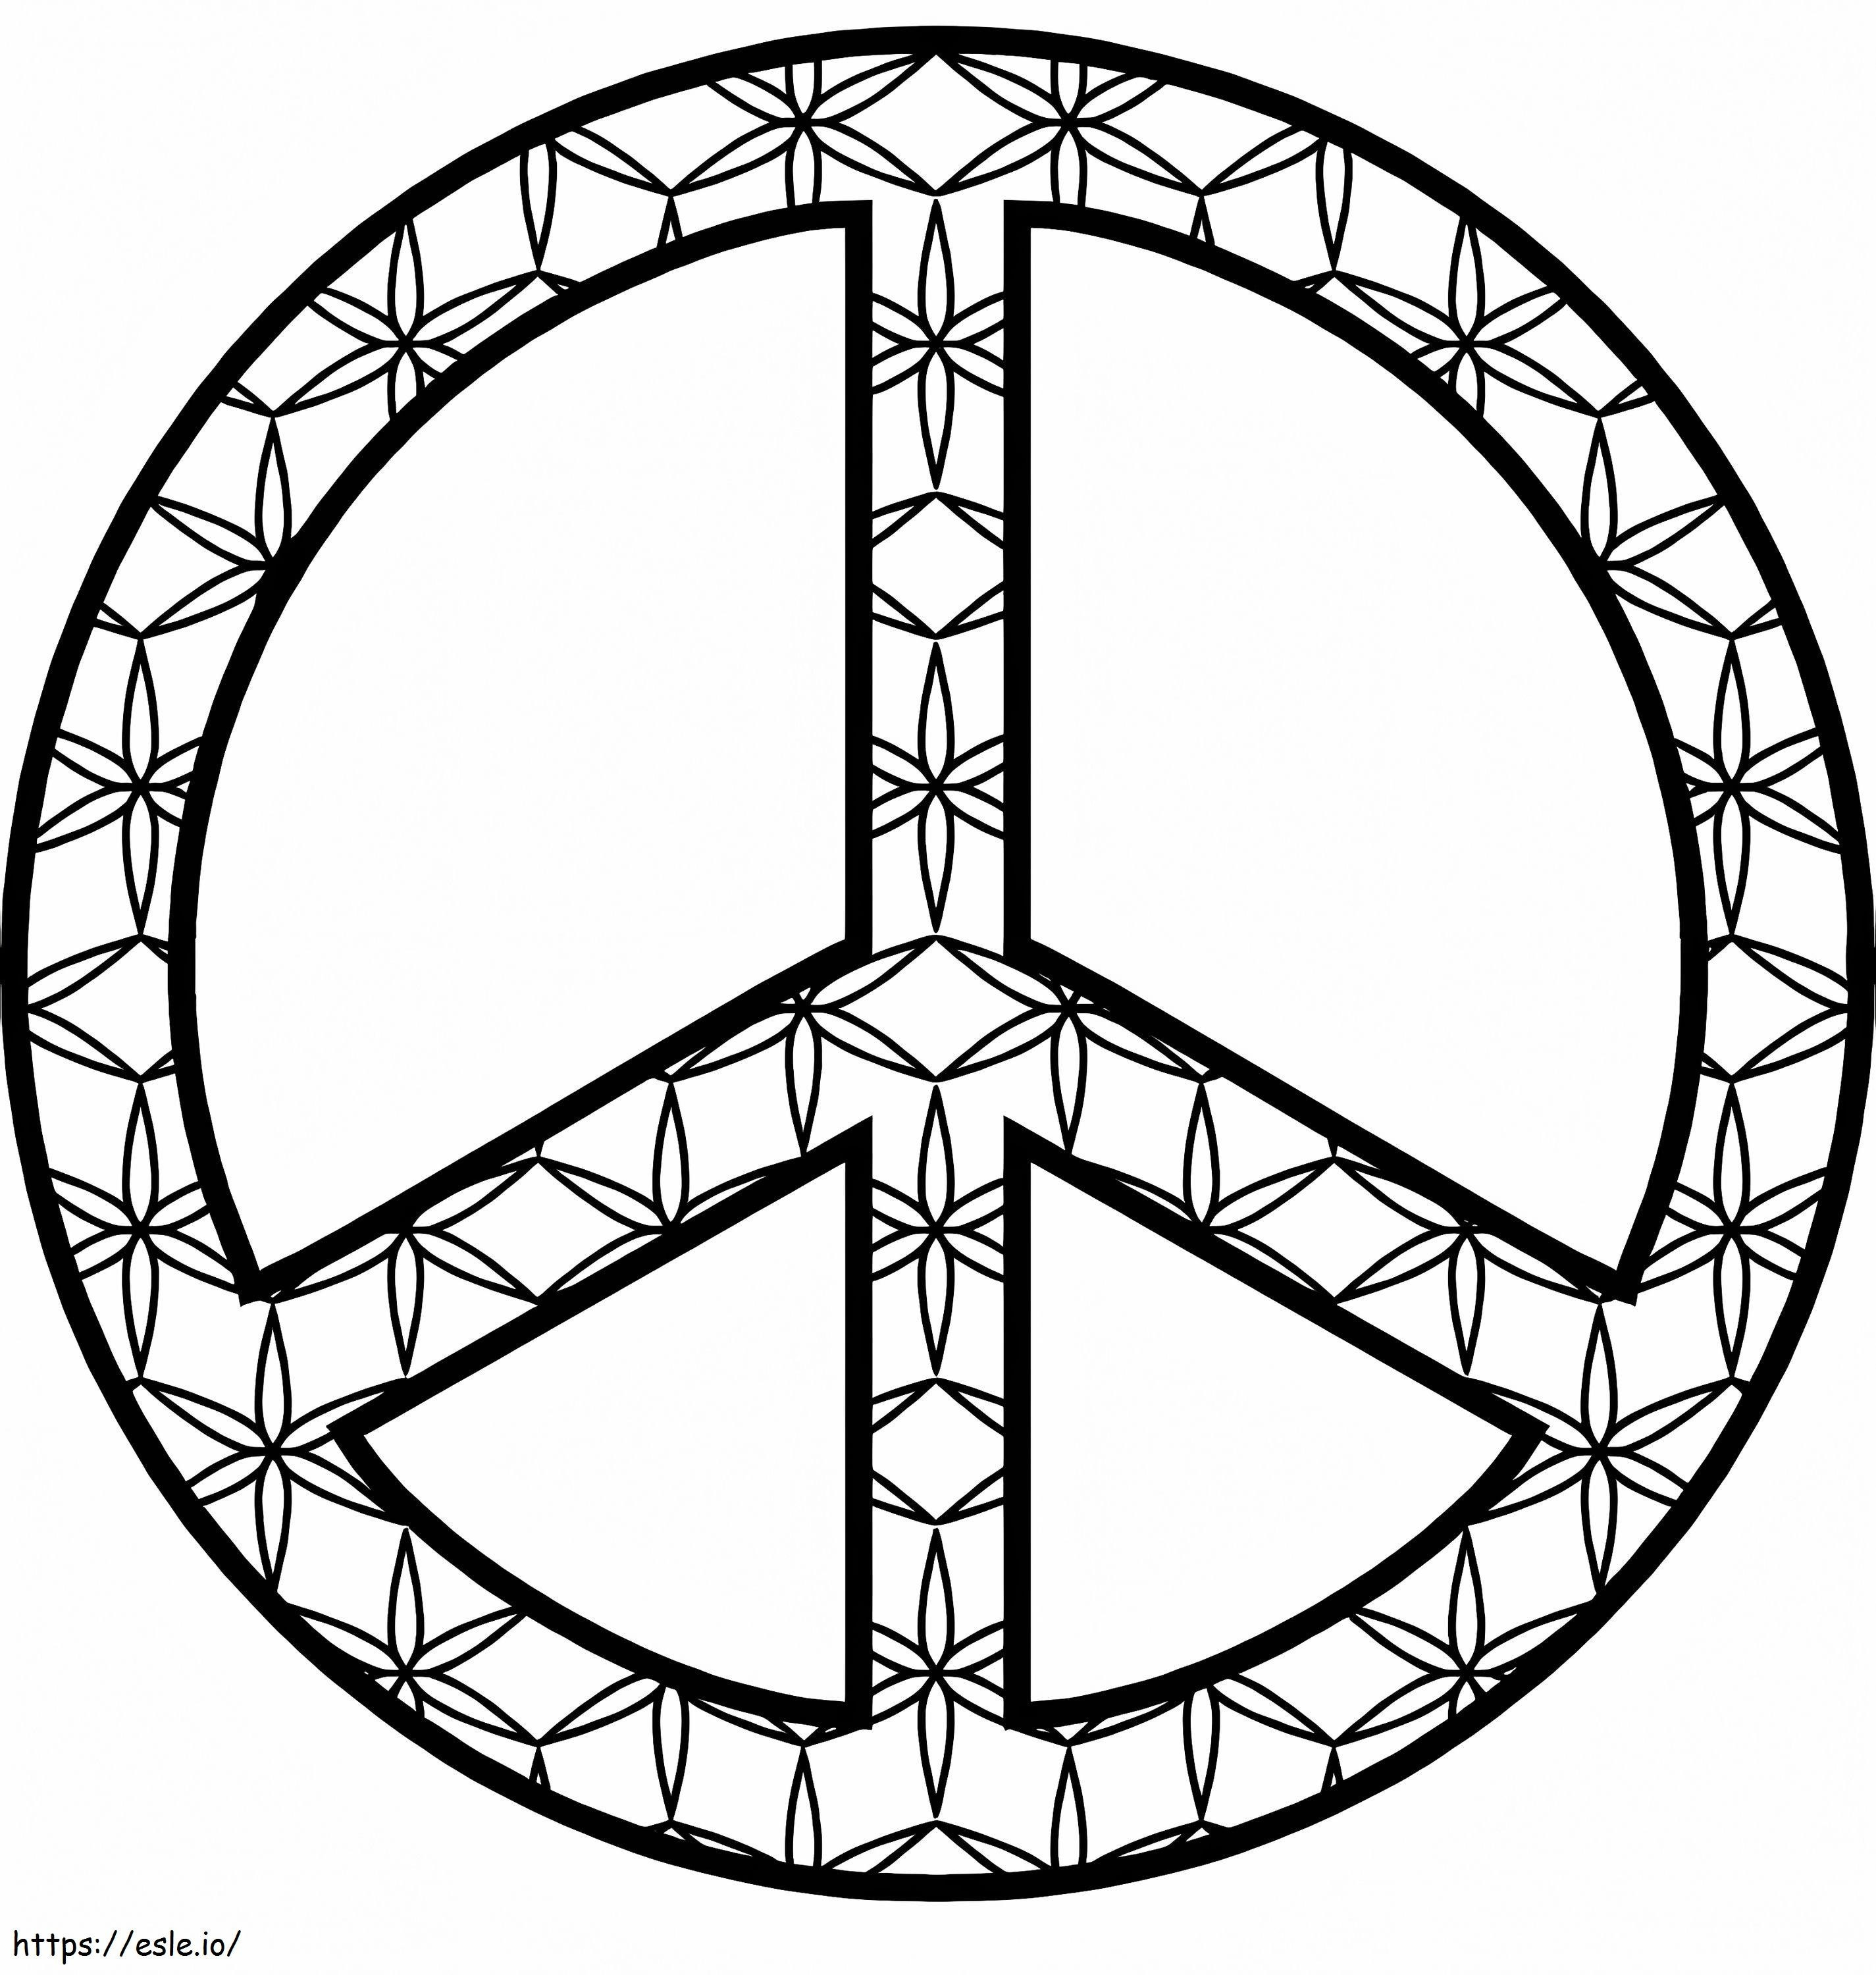 Tolles Friedenszeichen ausmalbilder